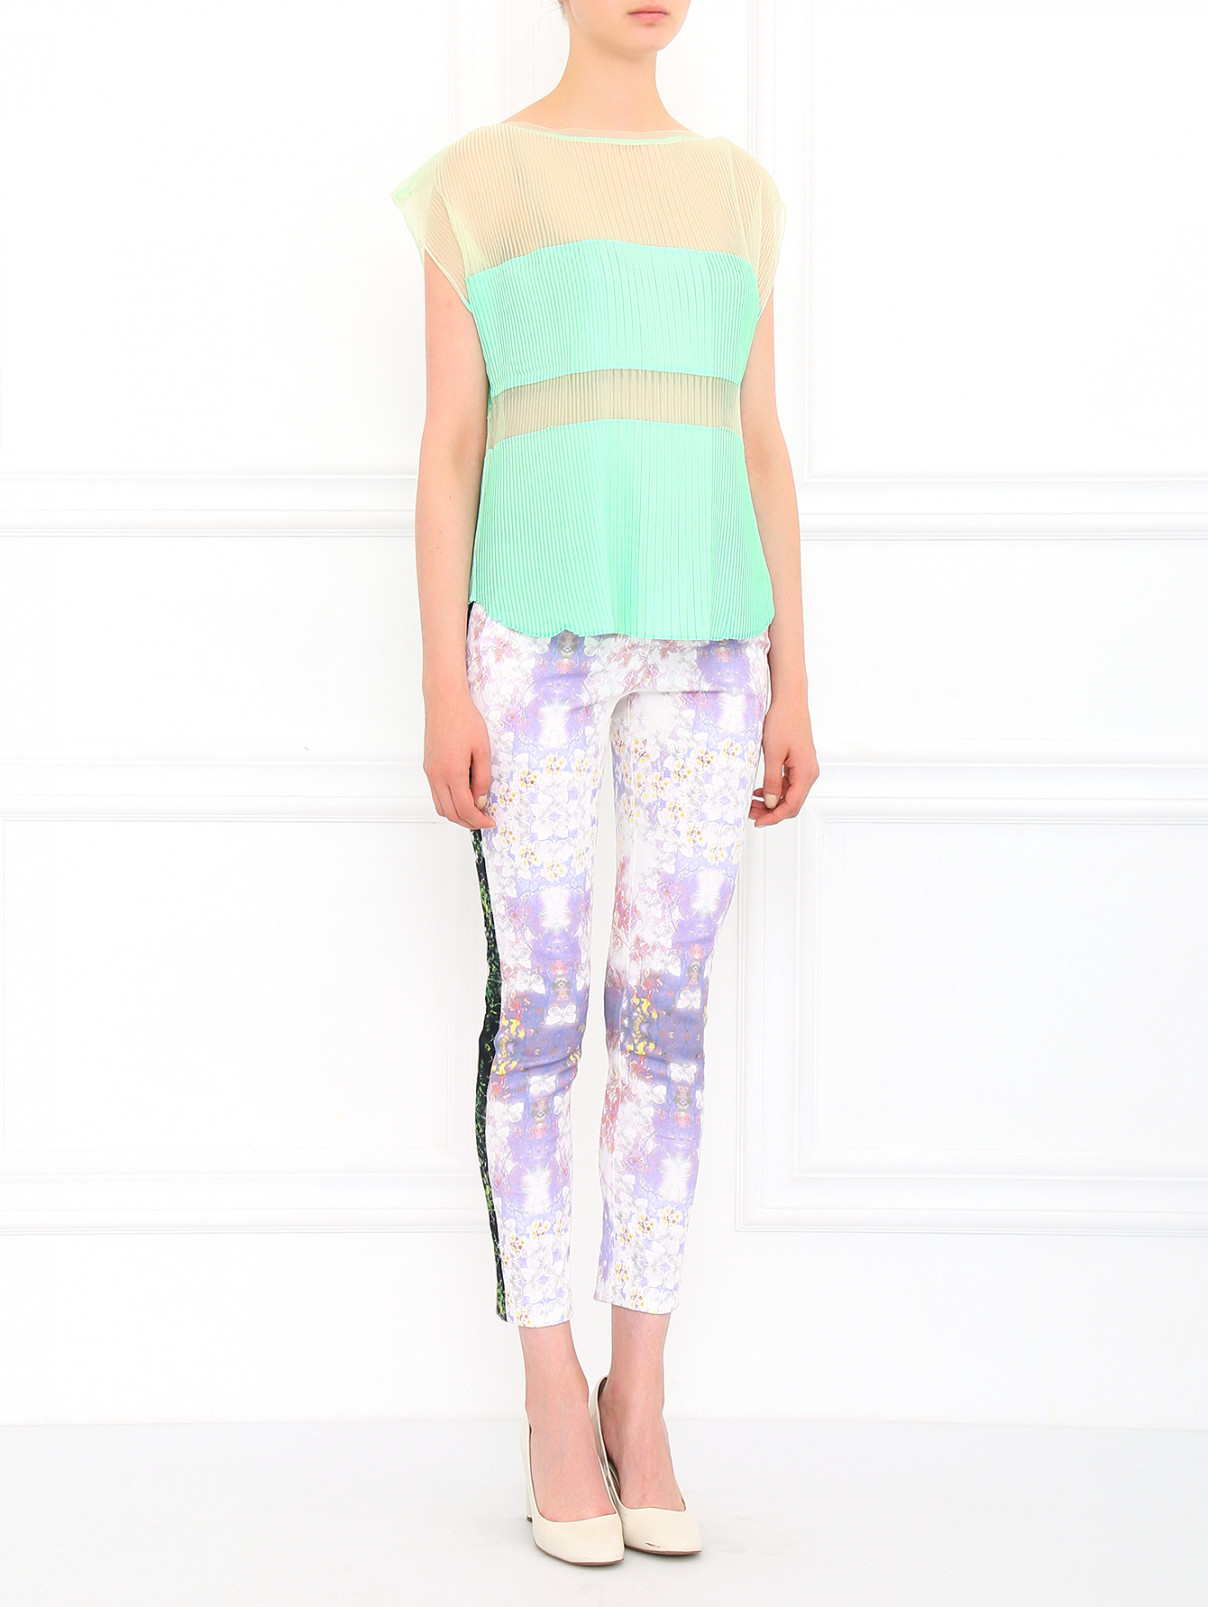 Укороченные брюки из хлопка Kira Plastinina  –  Модель Общий вид  – Цвет:  Узор